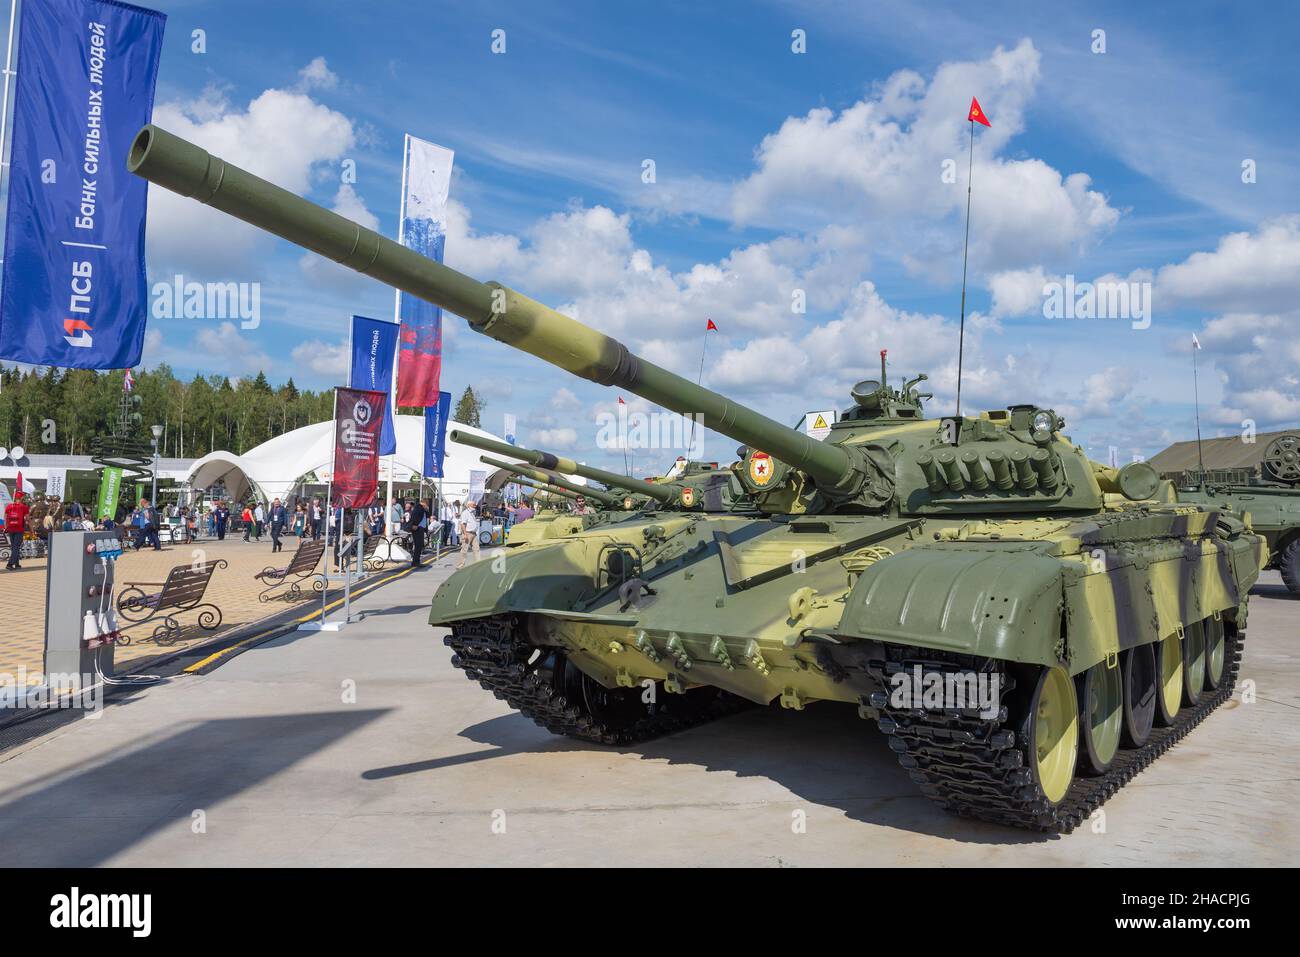 REGION MOSKAU, RUSSLAND - 25. AUGUST 2020: Export des sowjetischen Panzers T-72M auf dem internationalen militärtechnischen Forum 'Army-2020'. Patriot Park Stockfoto